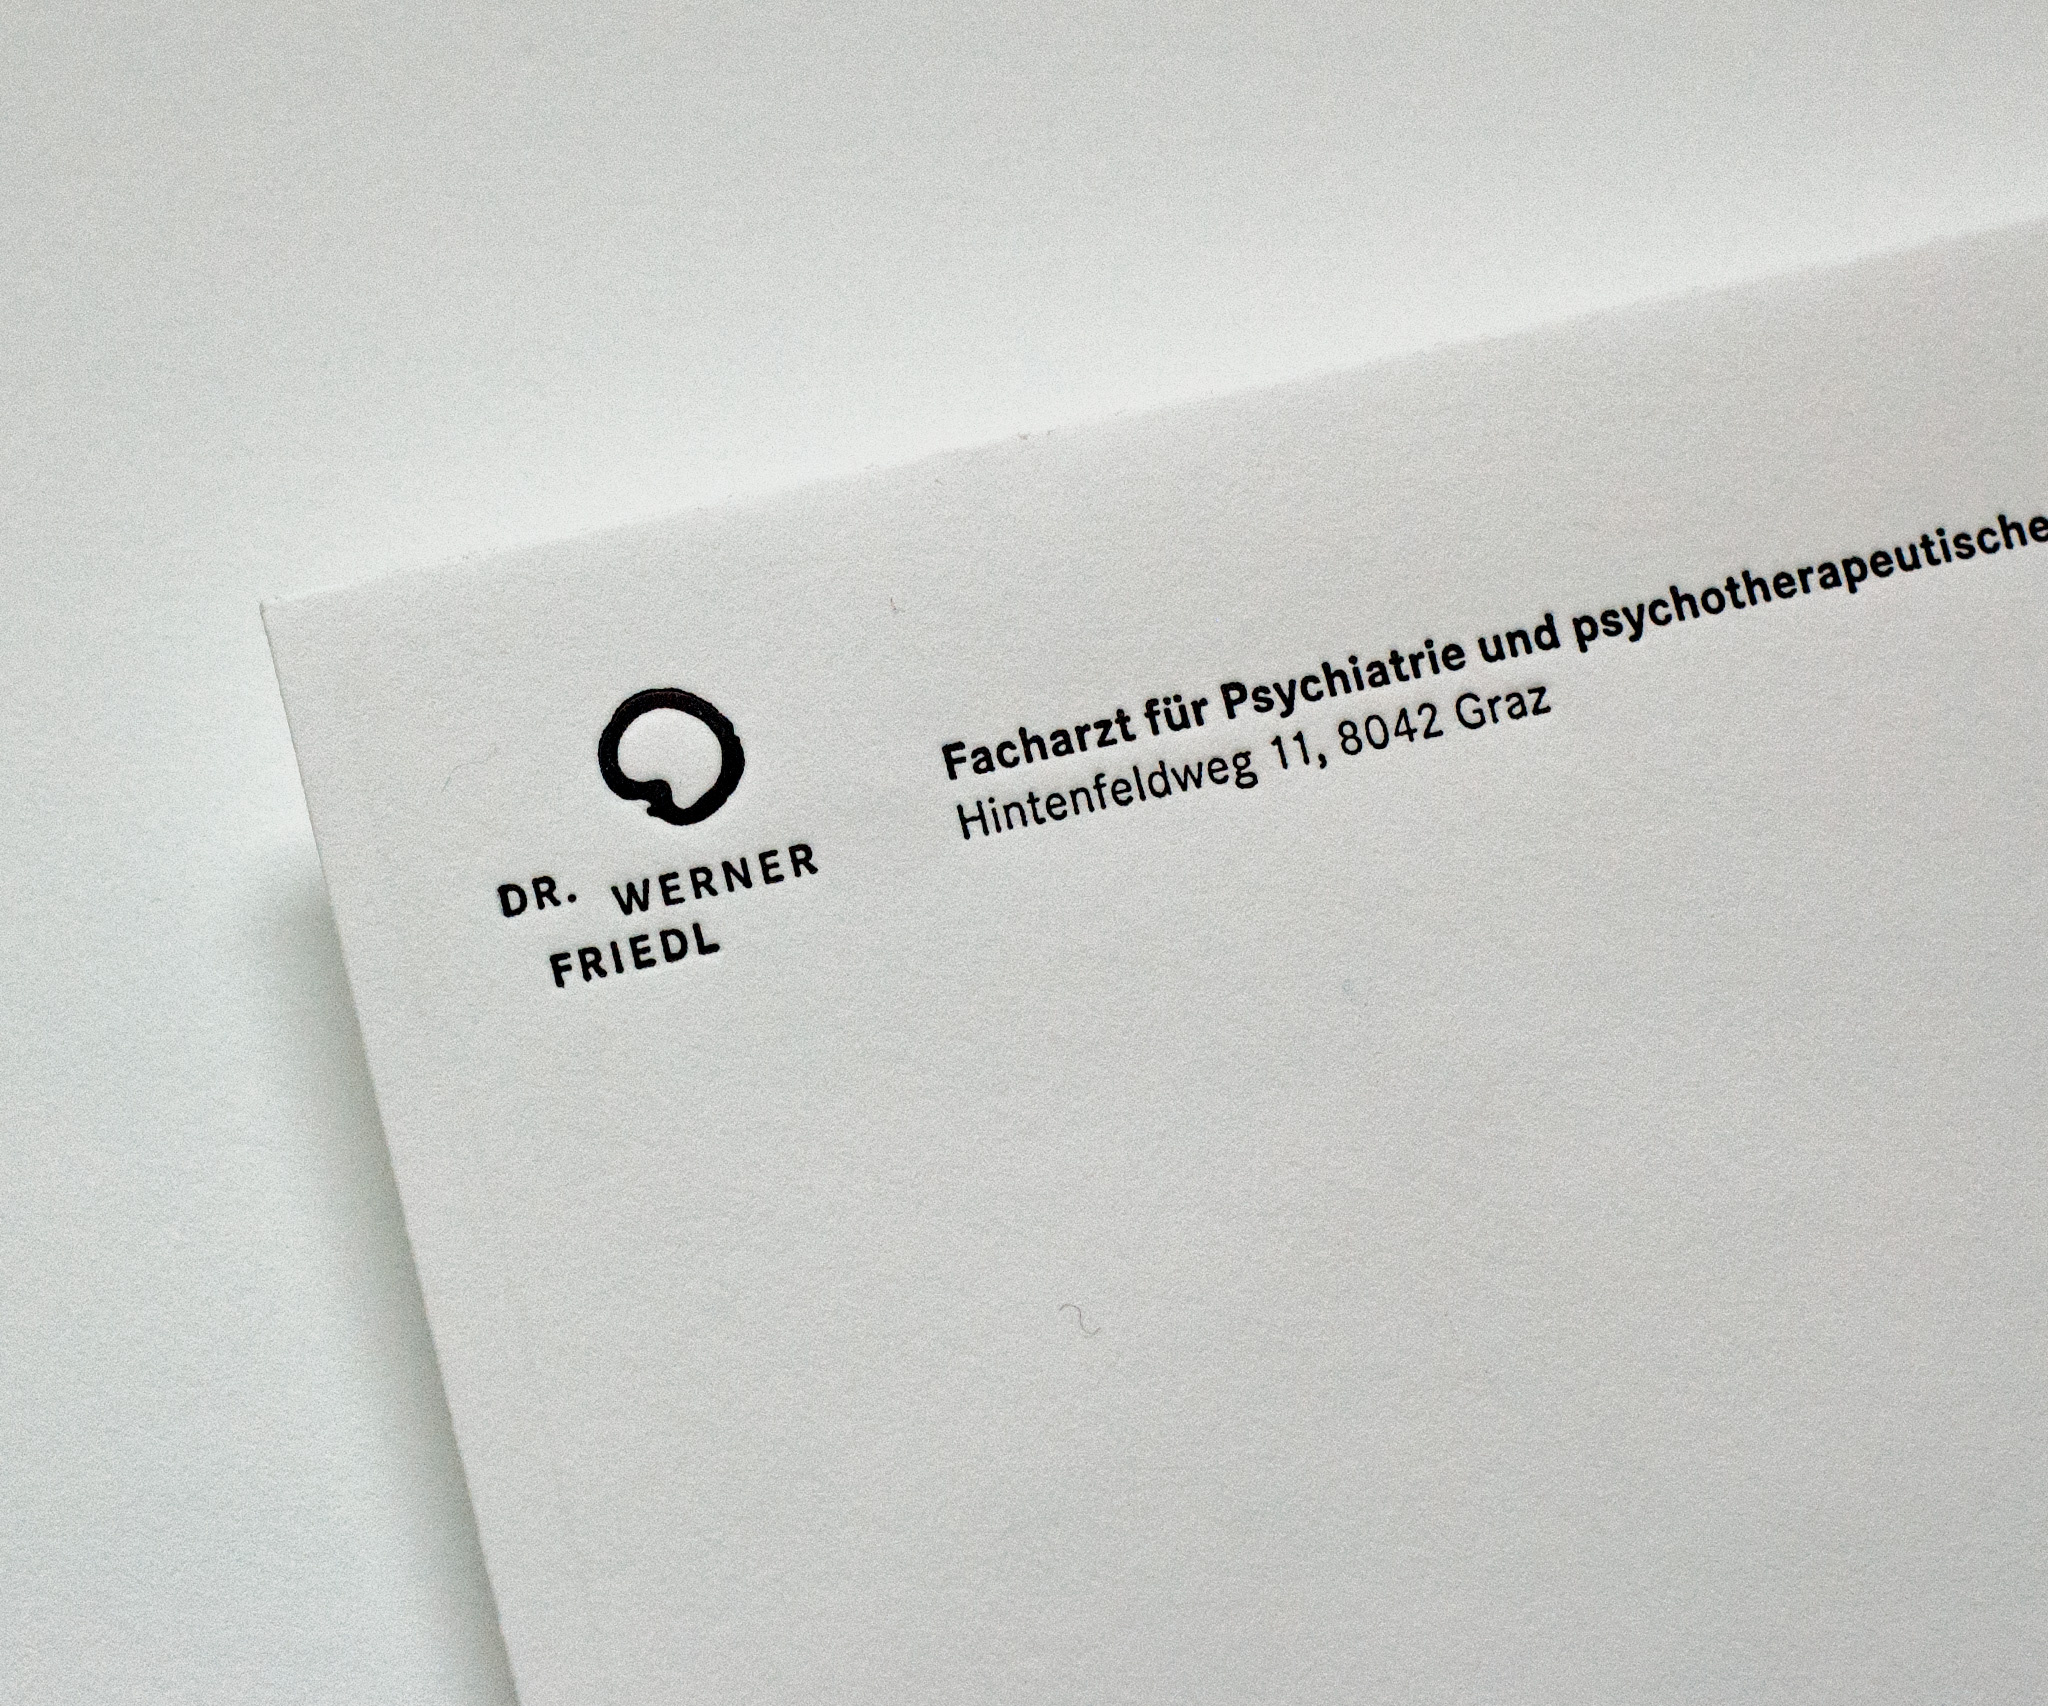 Detail of envelope of Dr. Werner Friedl